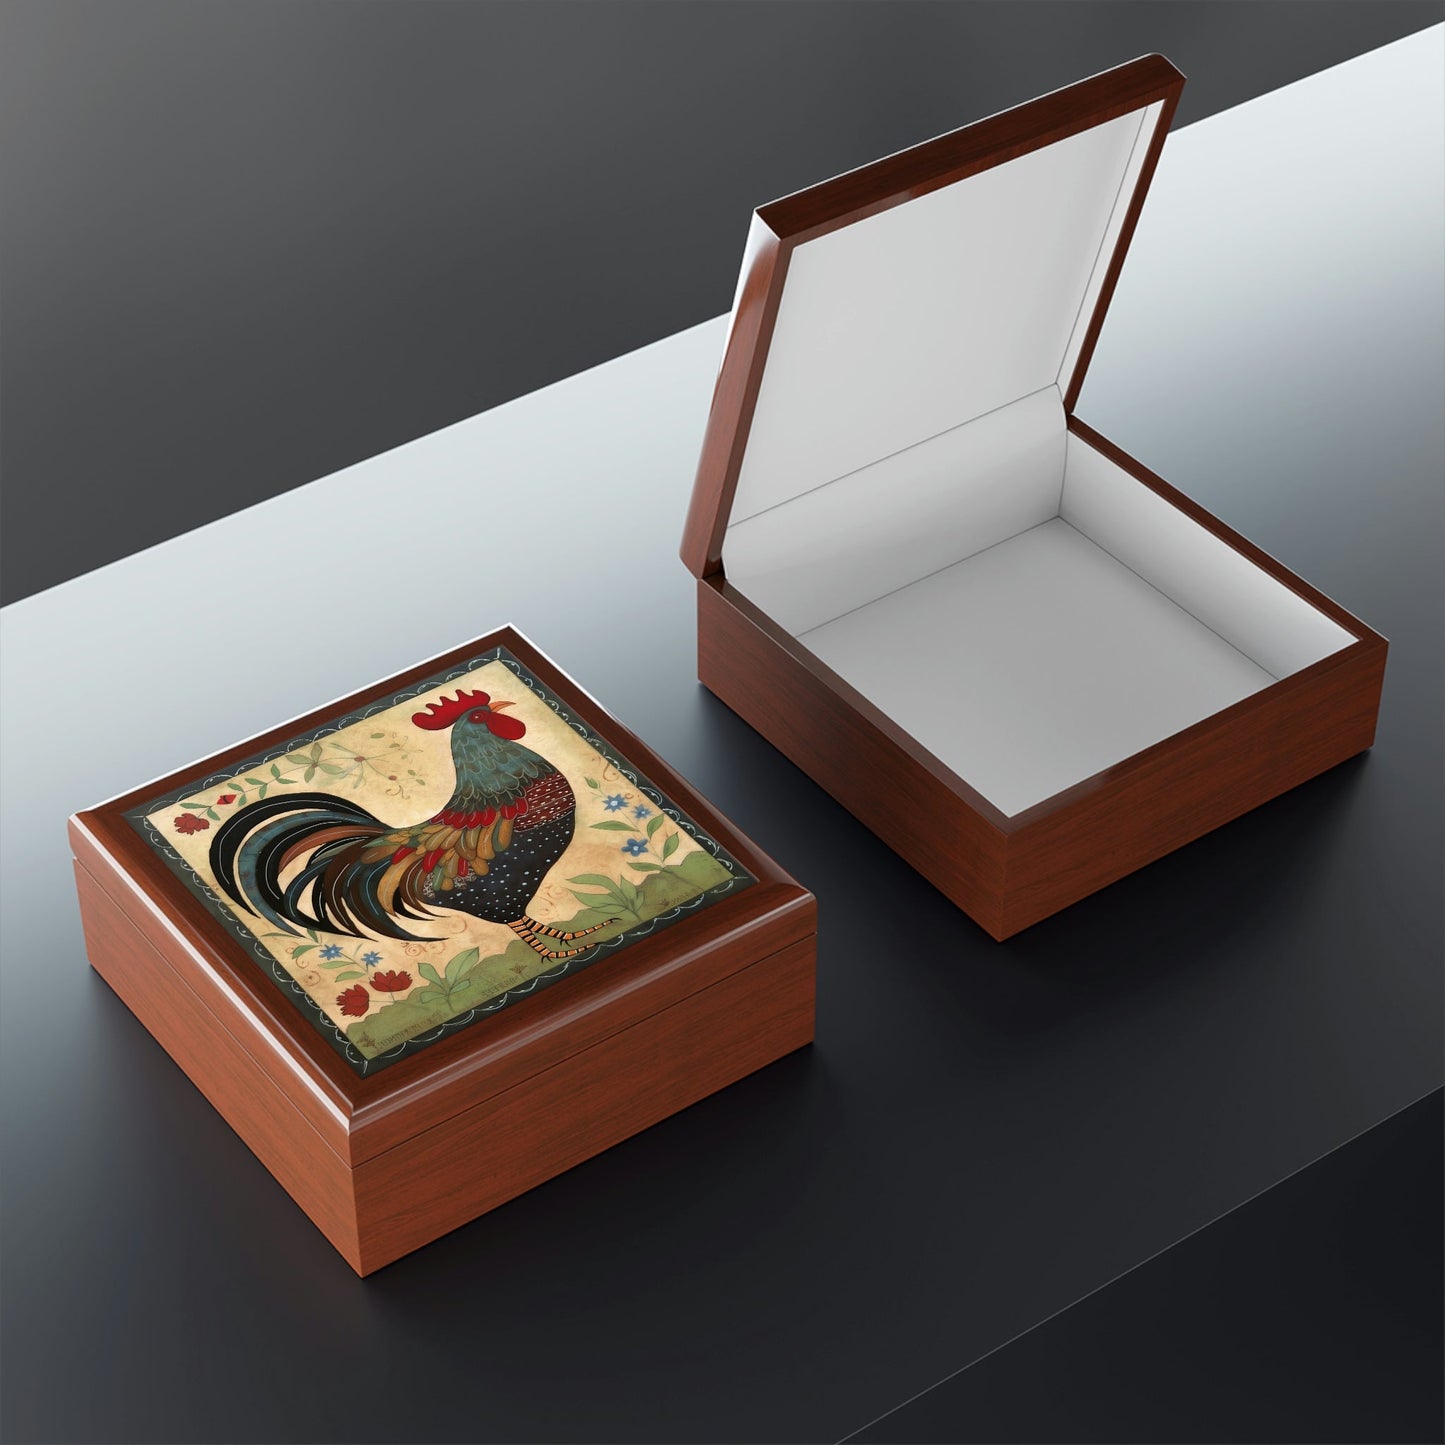 Rustic Folk Art Rooster Design Wooden Keepsake Jewelry Box